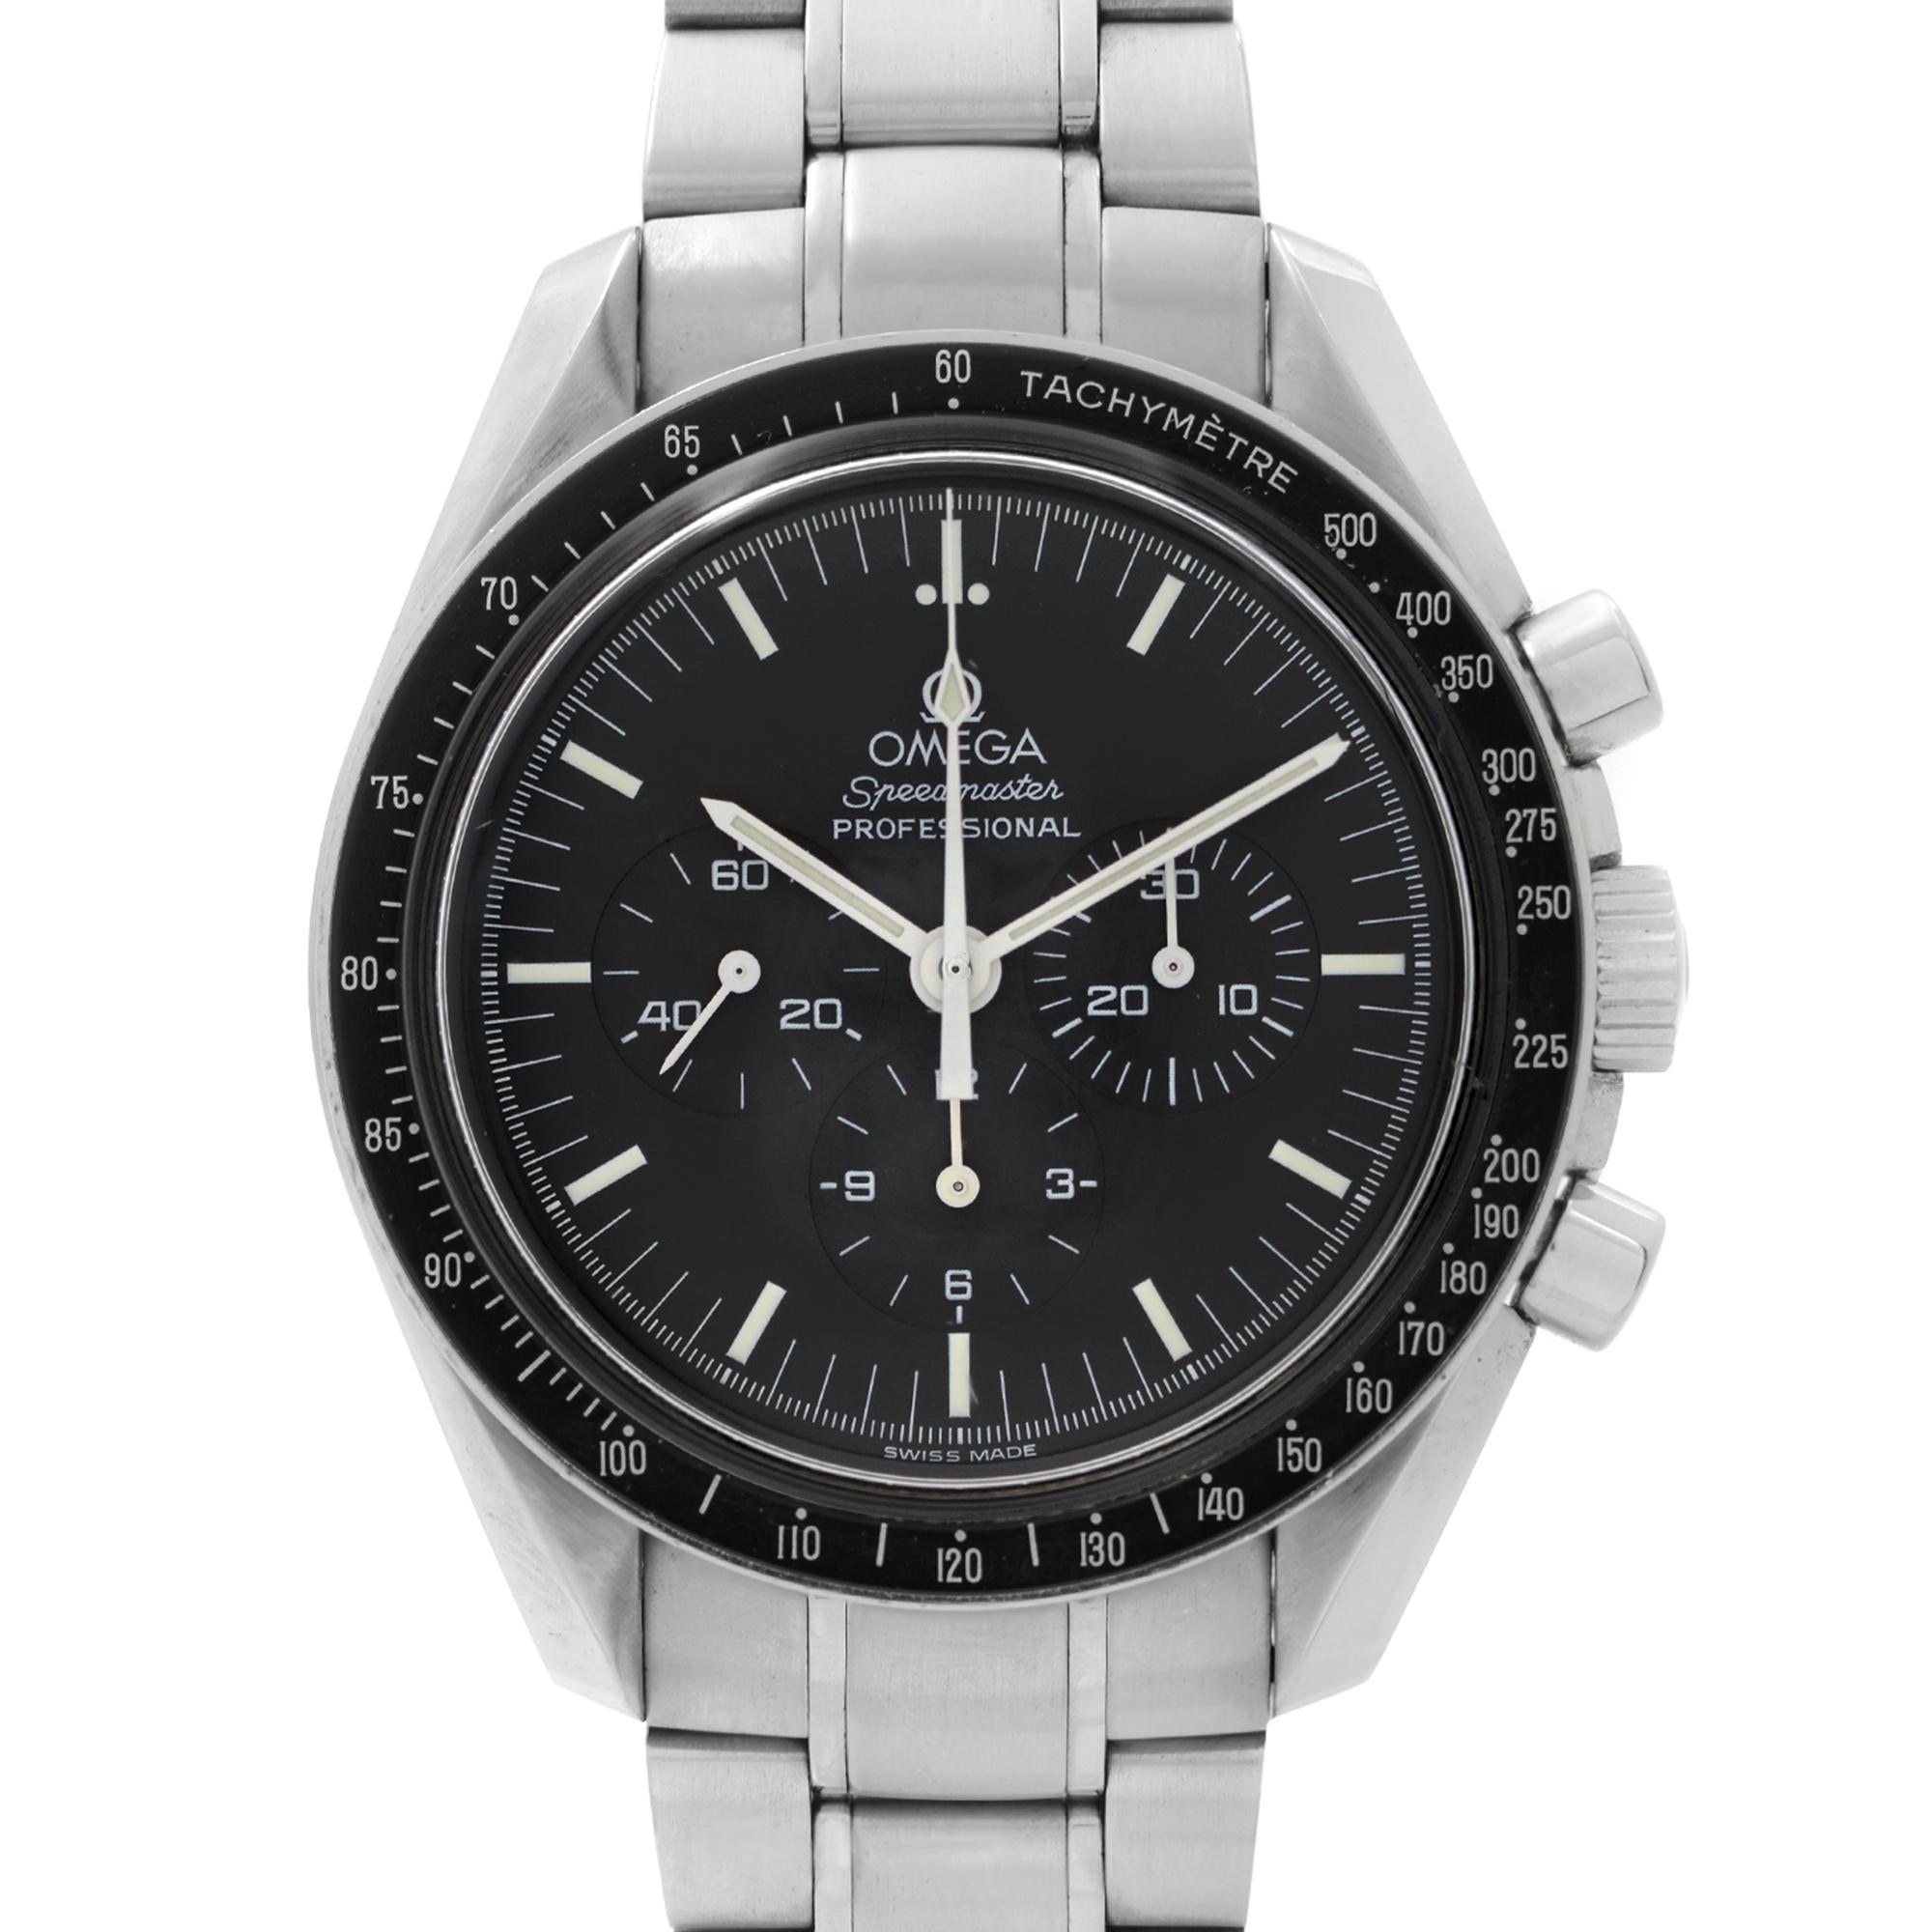 Gebrauchte Omega Speedmaster Professional Moonwatch Stahl schwarzes Zifferblatt Handaufzug Herrenuhr 3572.50.00. Diese Uhr wurde im Jahr 1998 hergestellt. Merkmale: Gebürstetes Edelstahlgehäuse und Stahlarmband. Feste schwarze Lünette mit